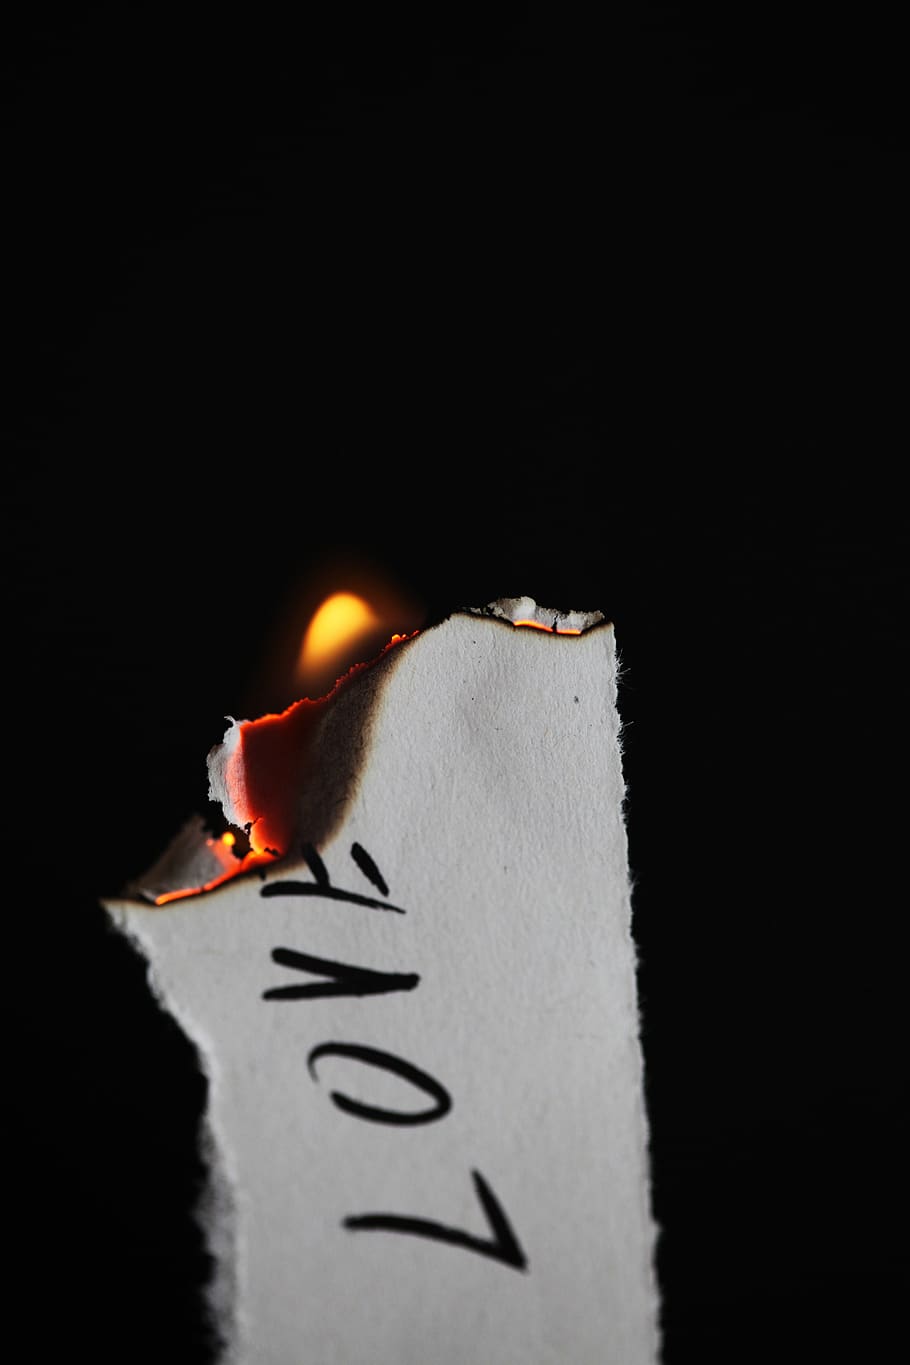 cinta, membakar, pada, kertas, roman, simbol, menyala, api, surat, kata